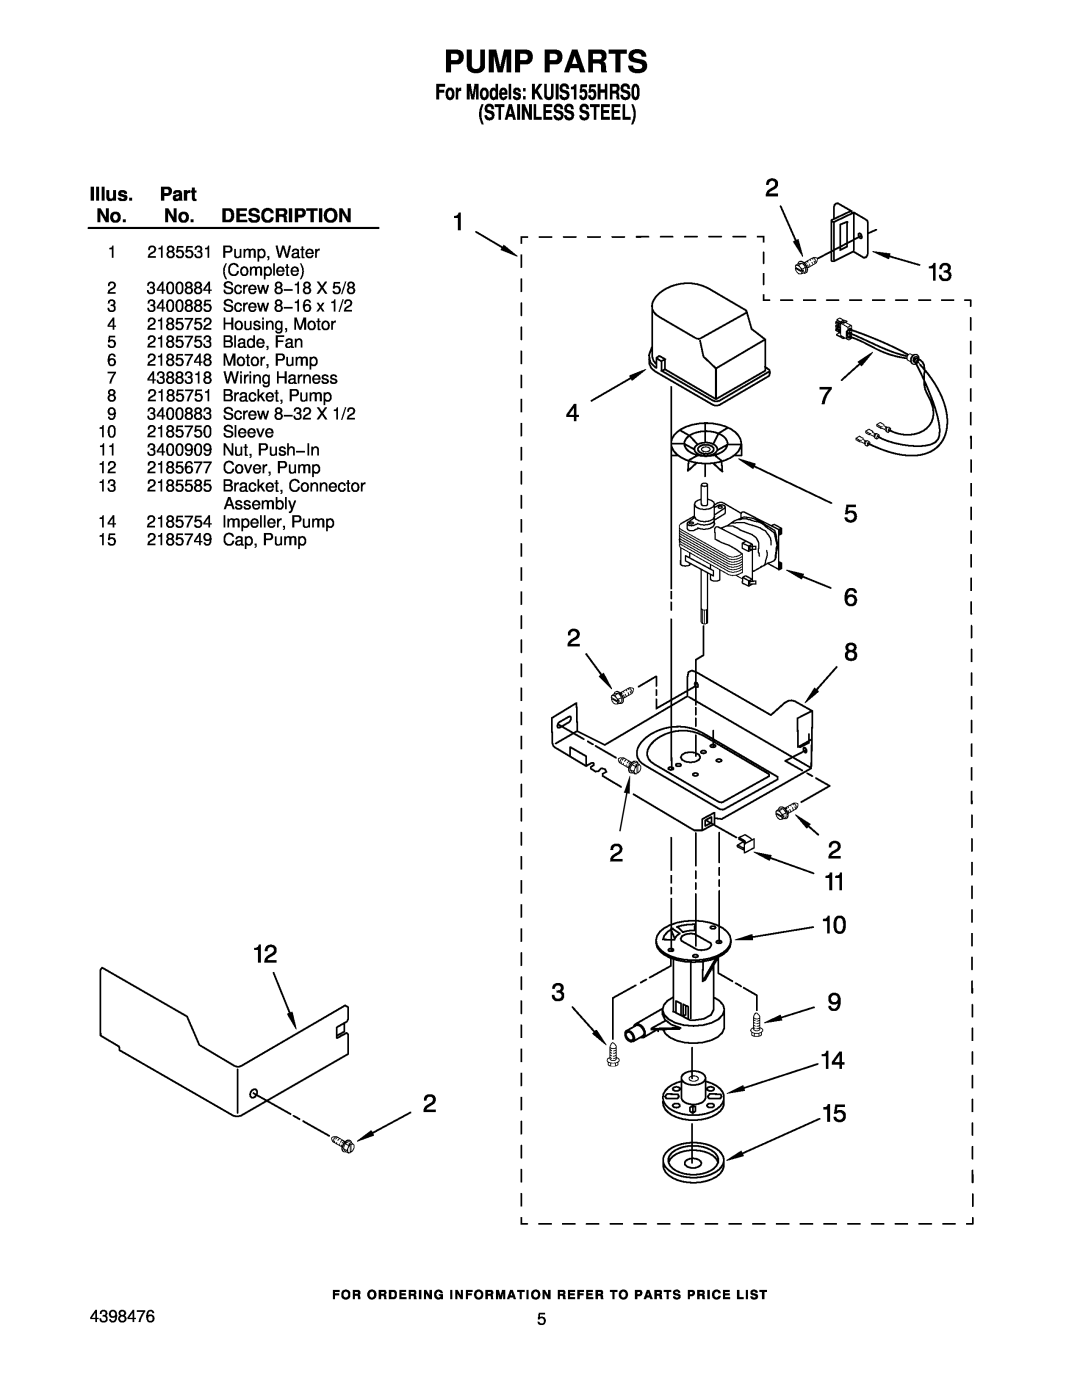 KitchenAid manual Pump Parts, For Models KUIS155HRS0 STAINLESS STEEL, Illus. Part No. No. DESCRIPTION, Screw 8−32 X 1/2 